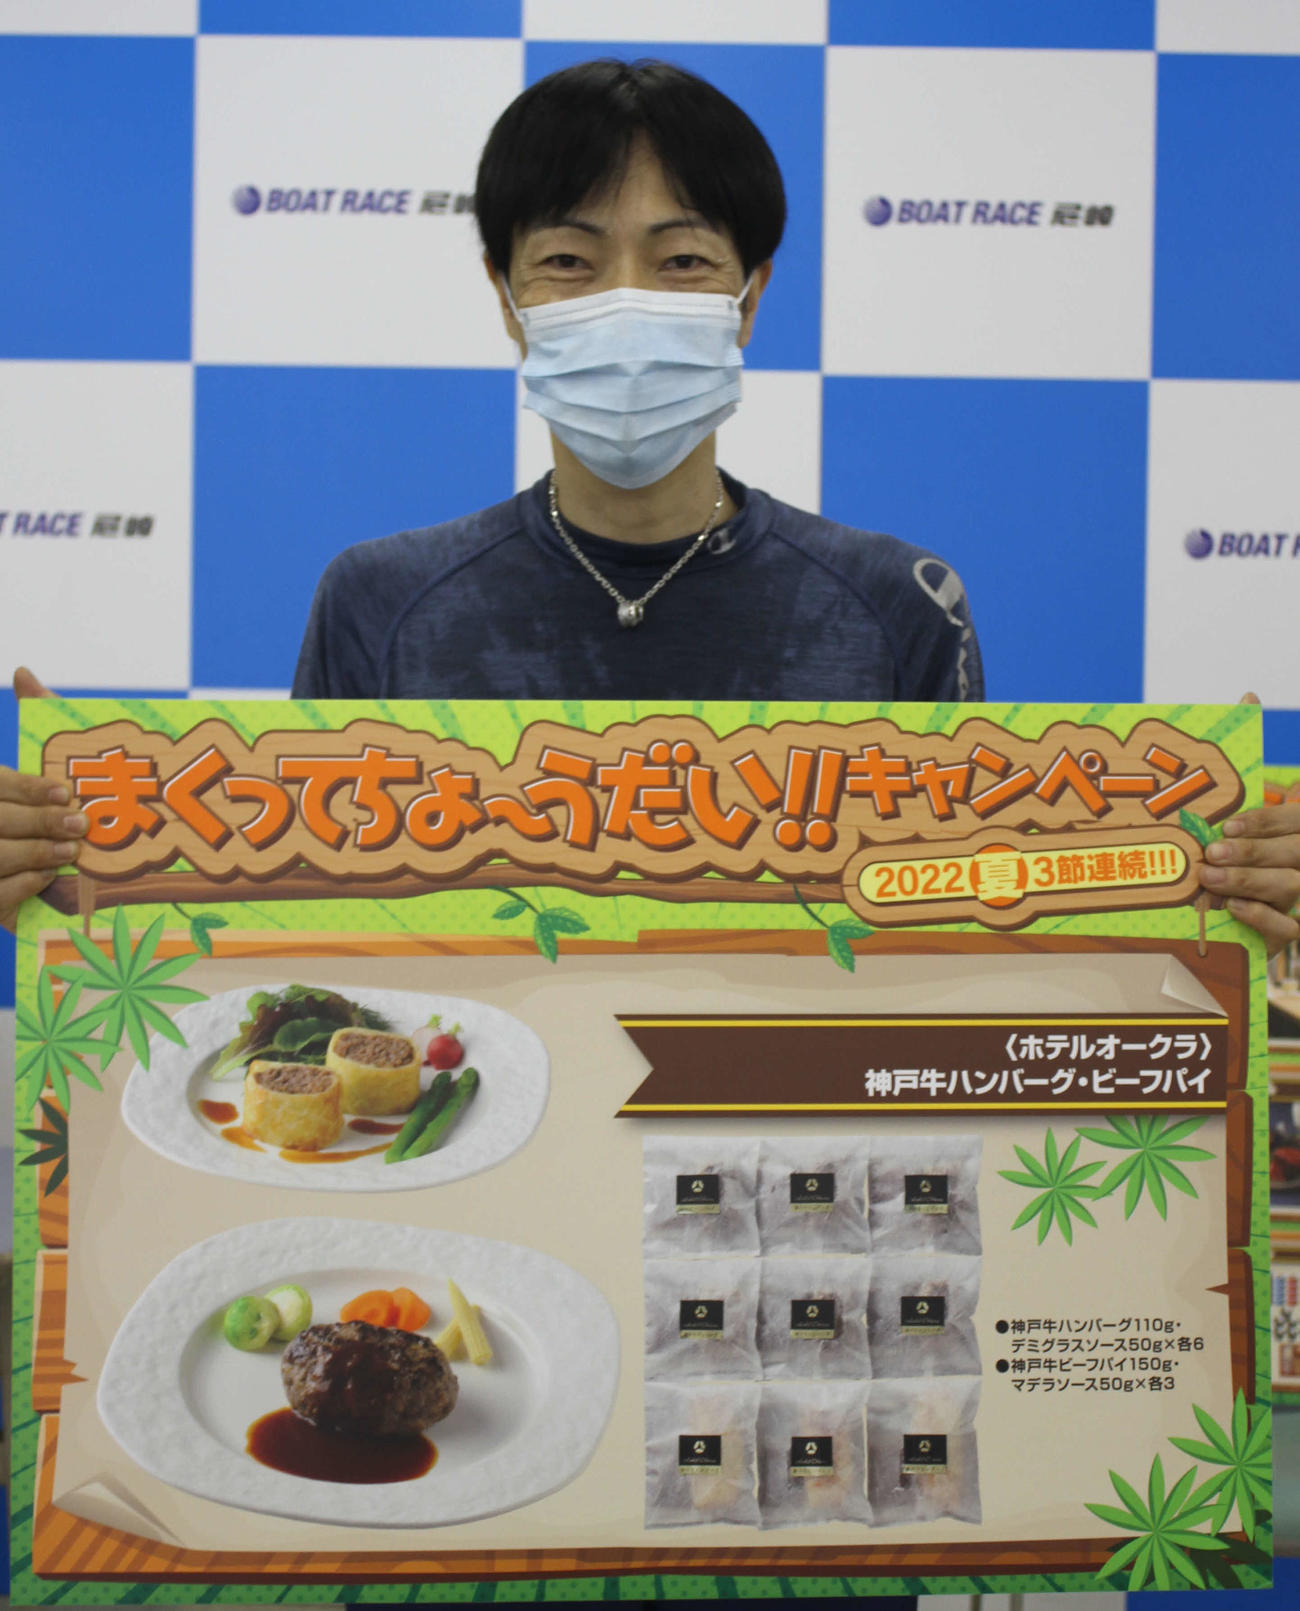 守田俊介はまくり賞を獲得。気合を入れて引いた抽選で神戸牛ハンバーグを手にした（撮影・北條直治）